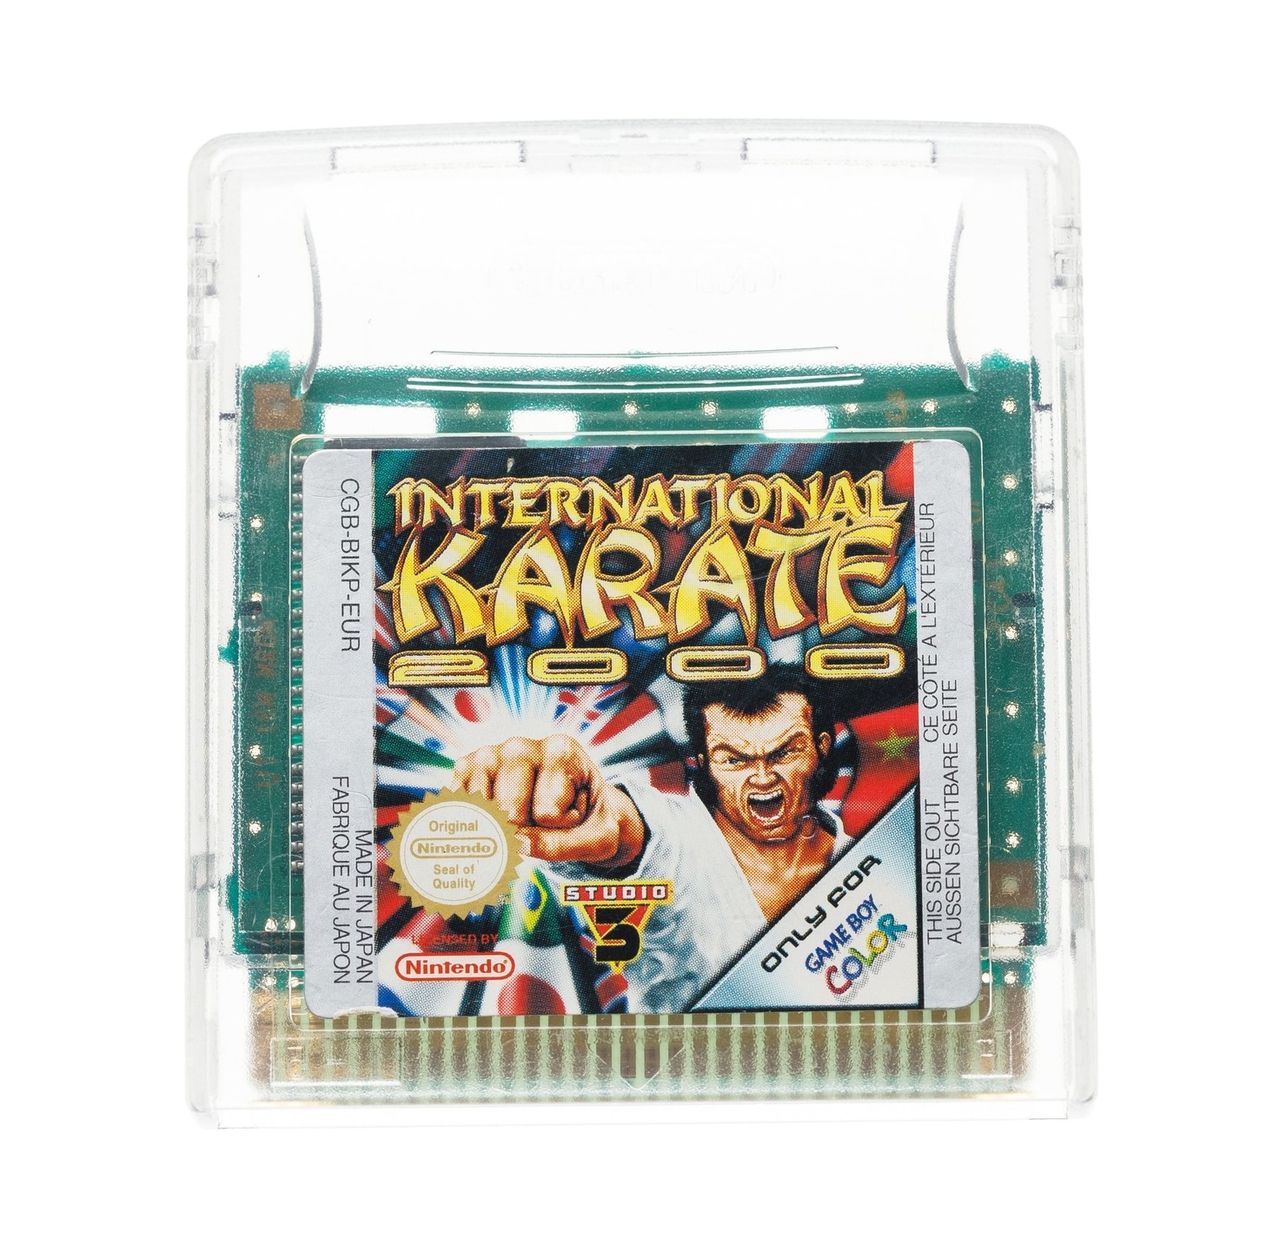 International Karate 2000 - Gameboy Color Games